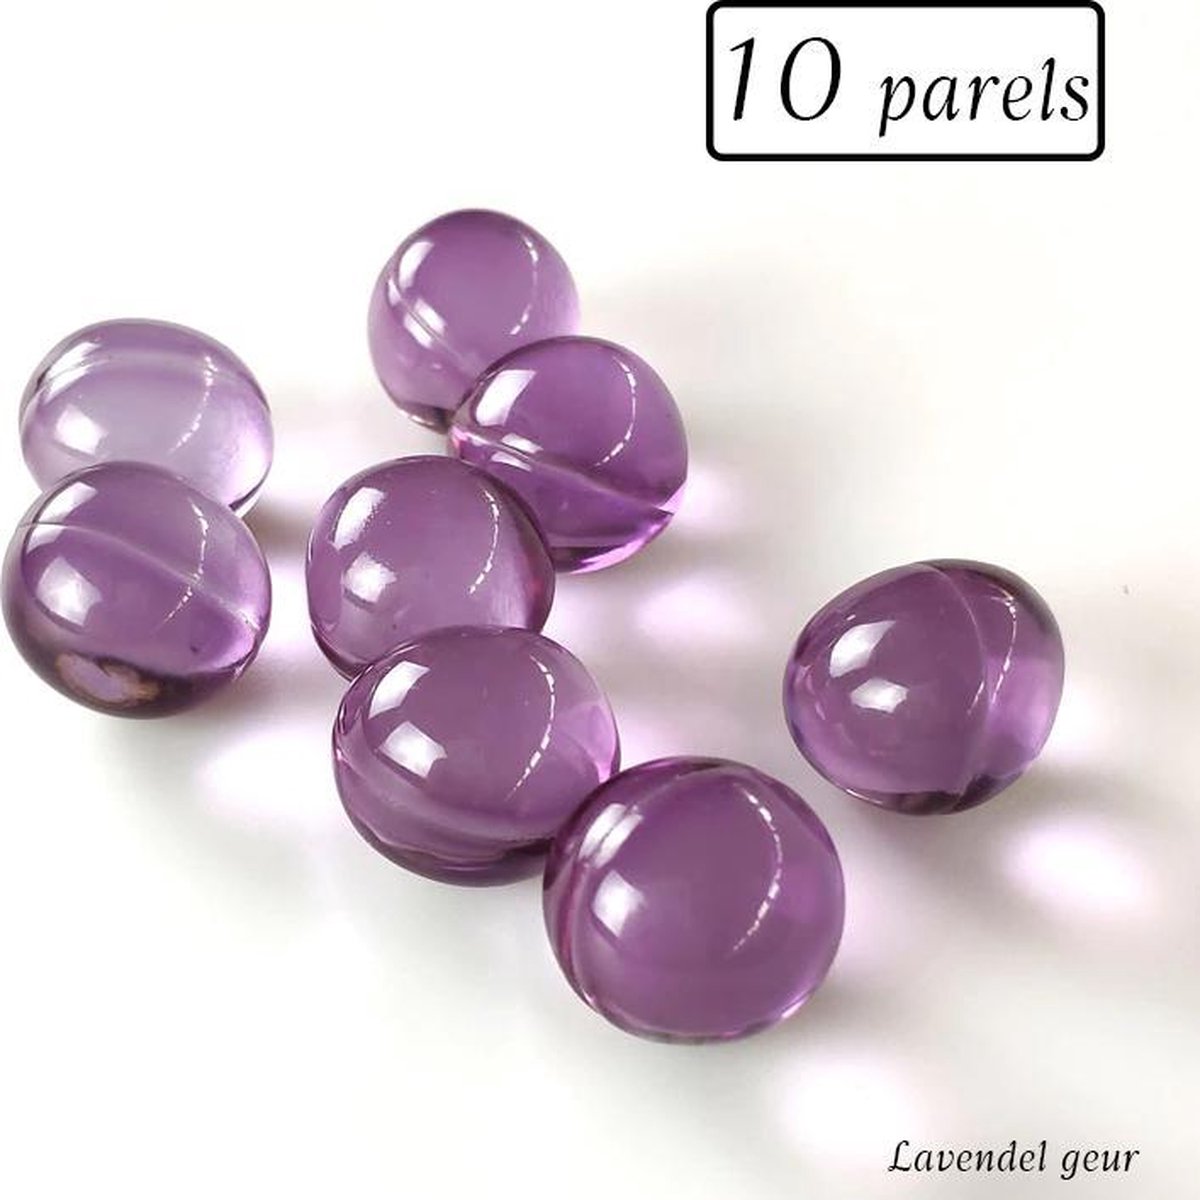 Badparels - 10 parels- Lavendel geur - Ronde badparels - Badparels voor in bad - Heerlijke badparels met Lavendelgeur